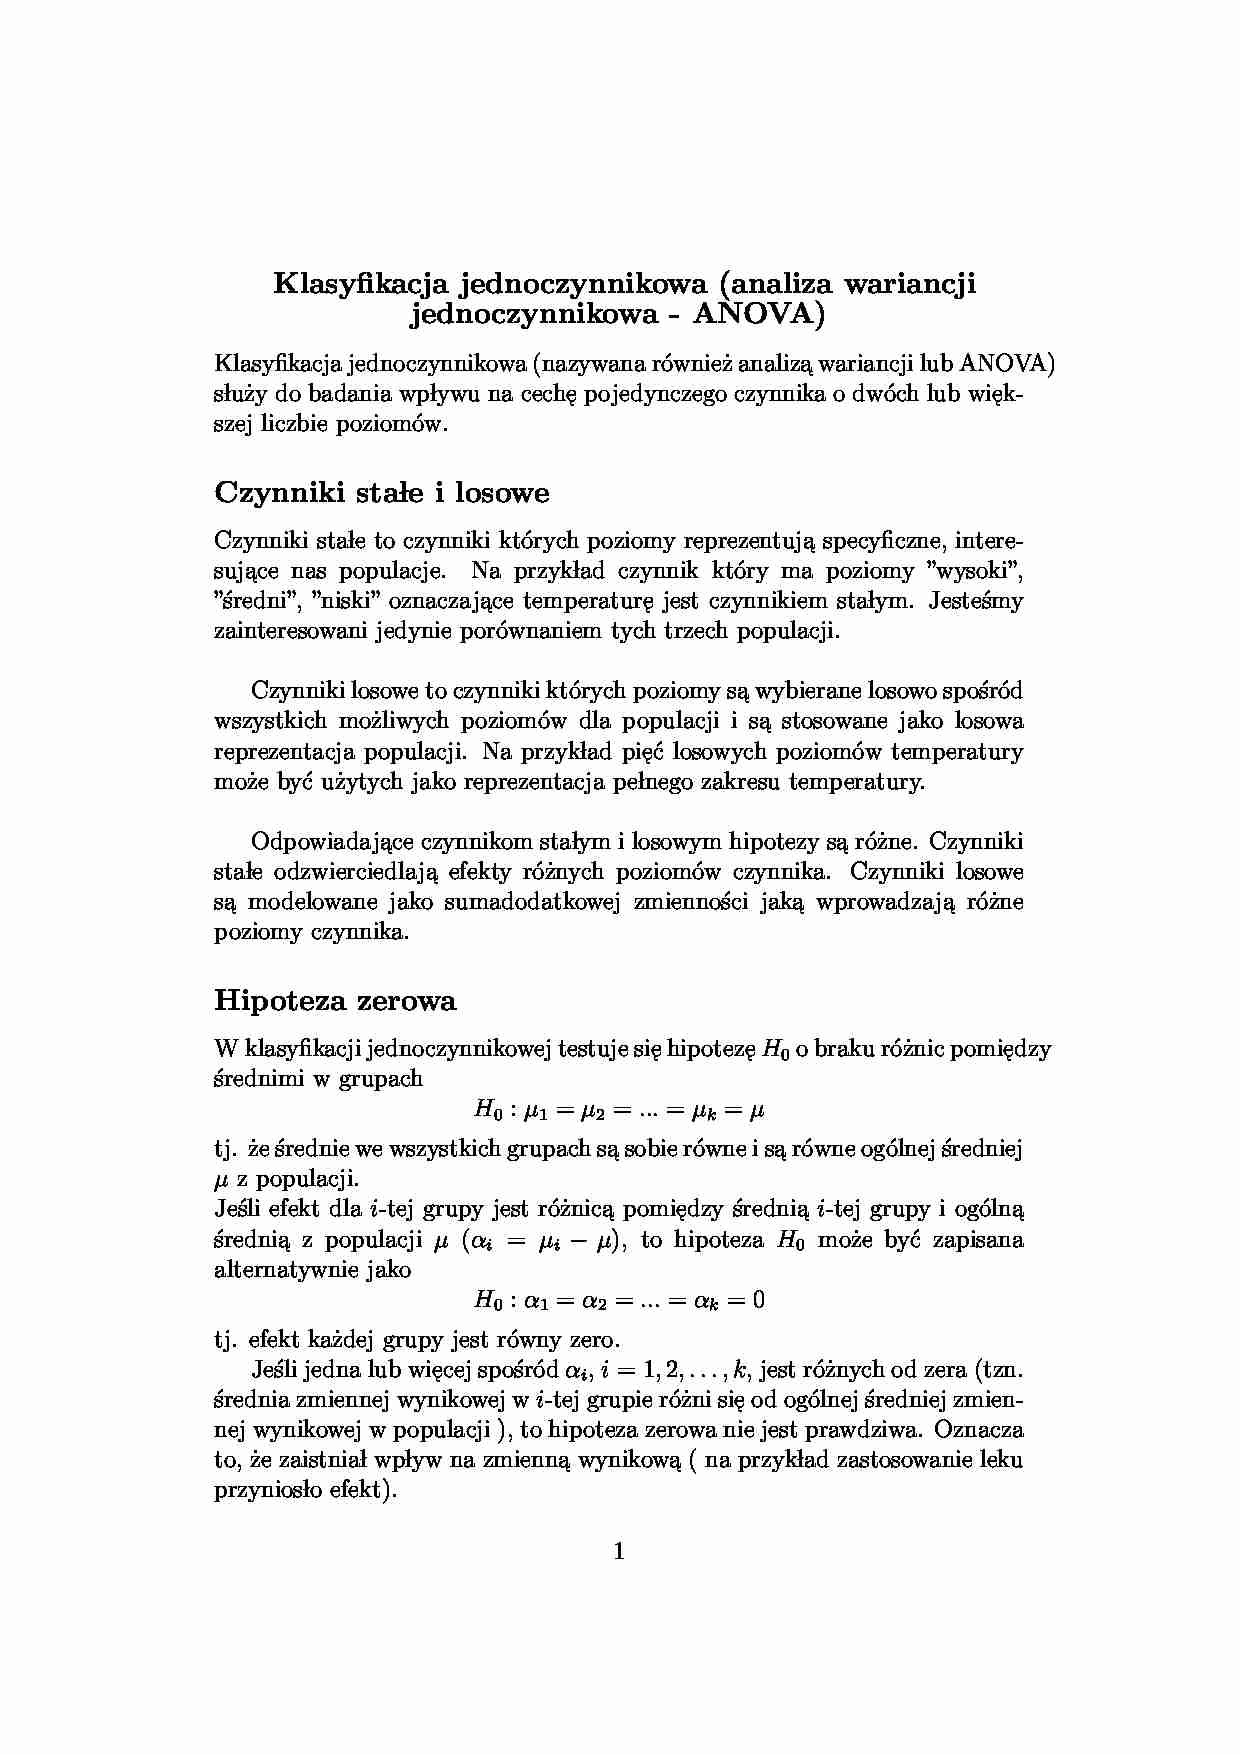 Analiza wariancji jednoczynnikowa Anova - strona 1